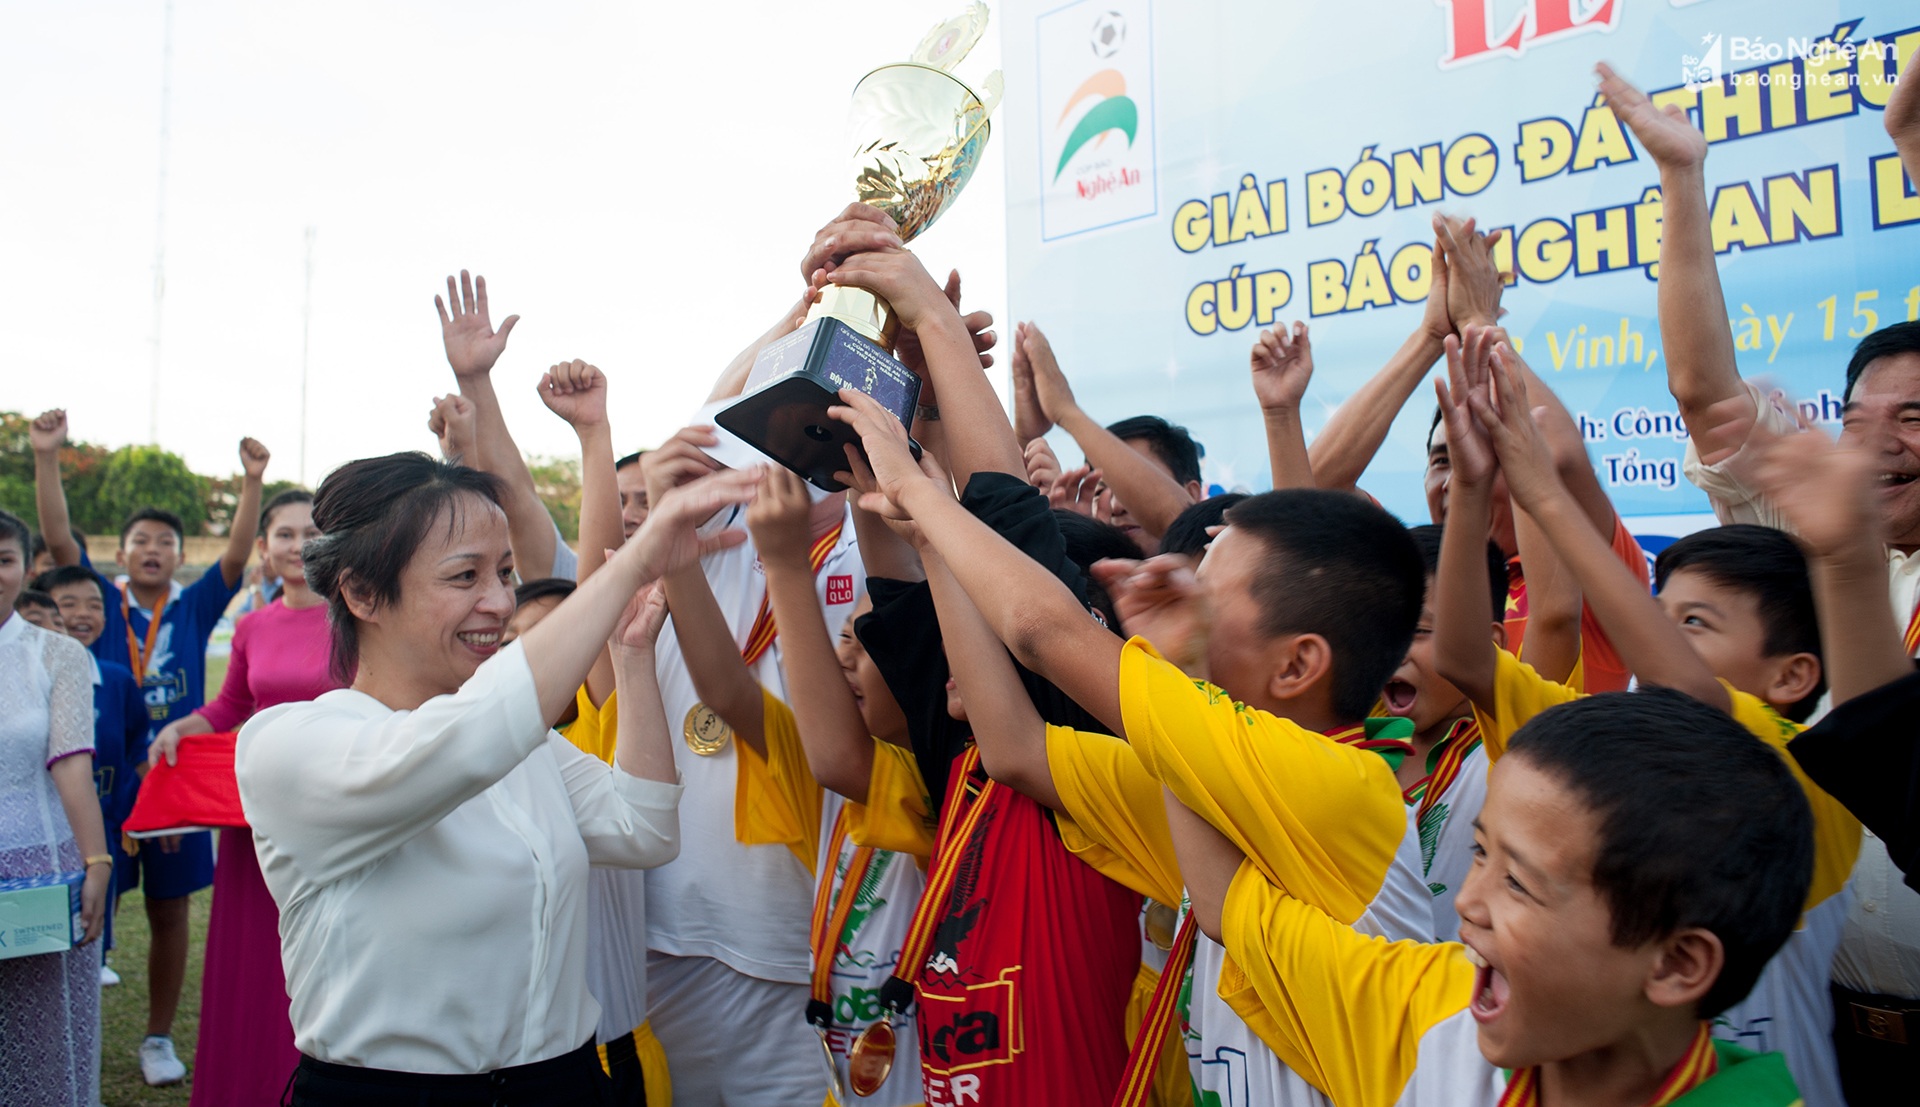 Giải bóng đá TN-NĐ Cúp Báo Nghệ An mùa giải lần thứ XXIII sẽ để lại nhiều dấu ấn, kỷ niệm đẹp với tất cả mọi người.